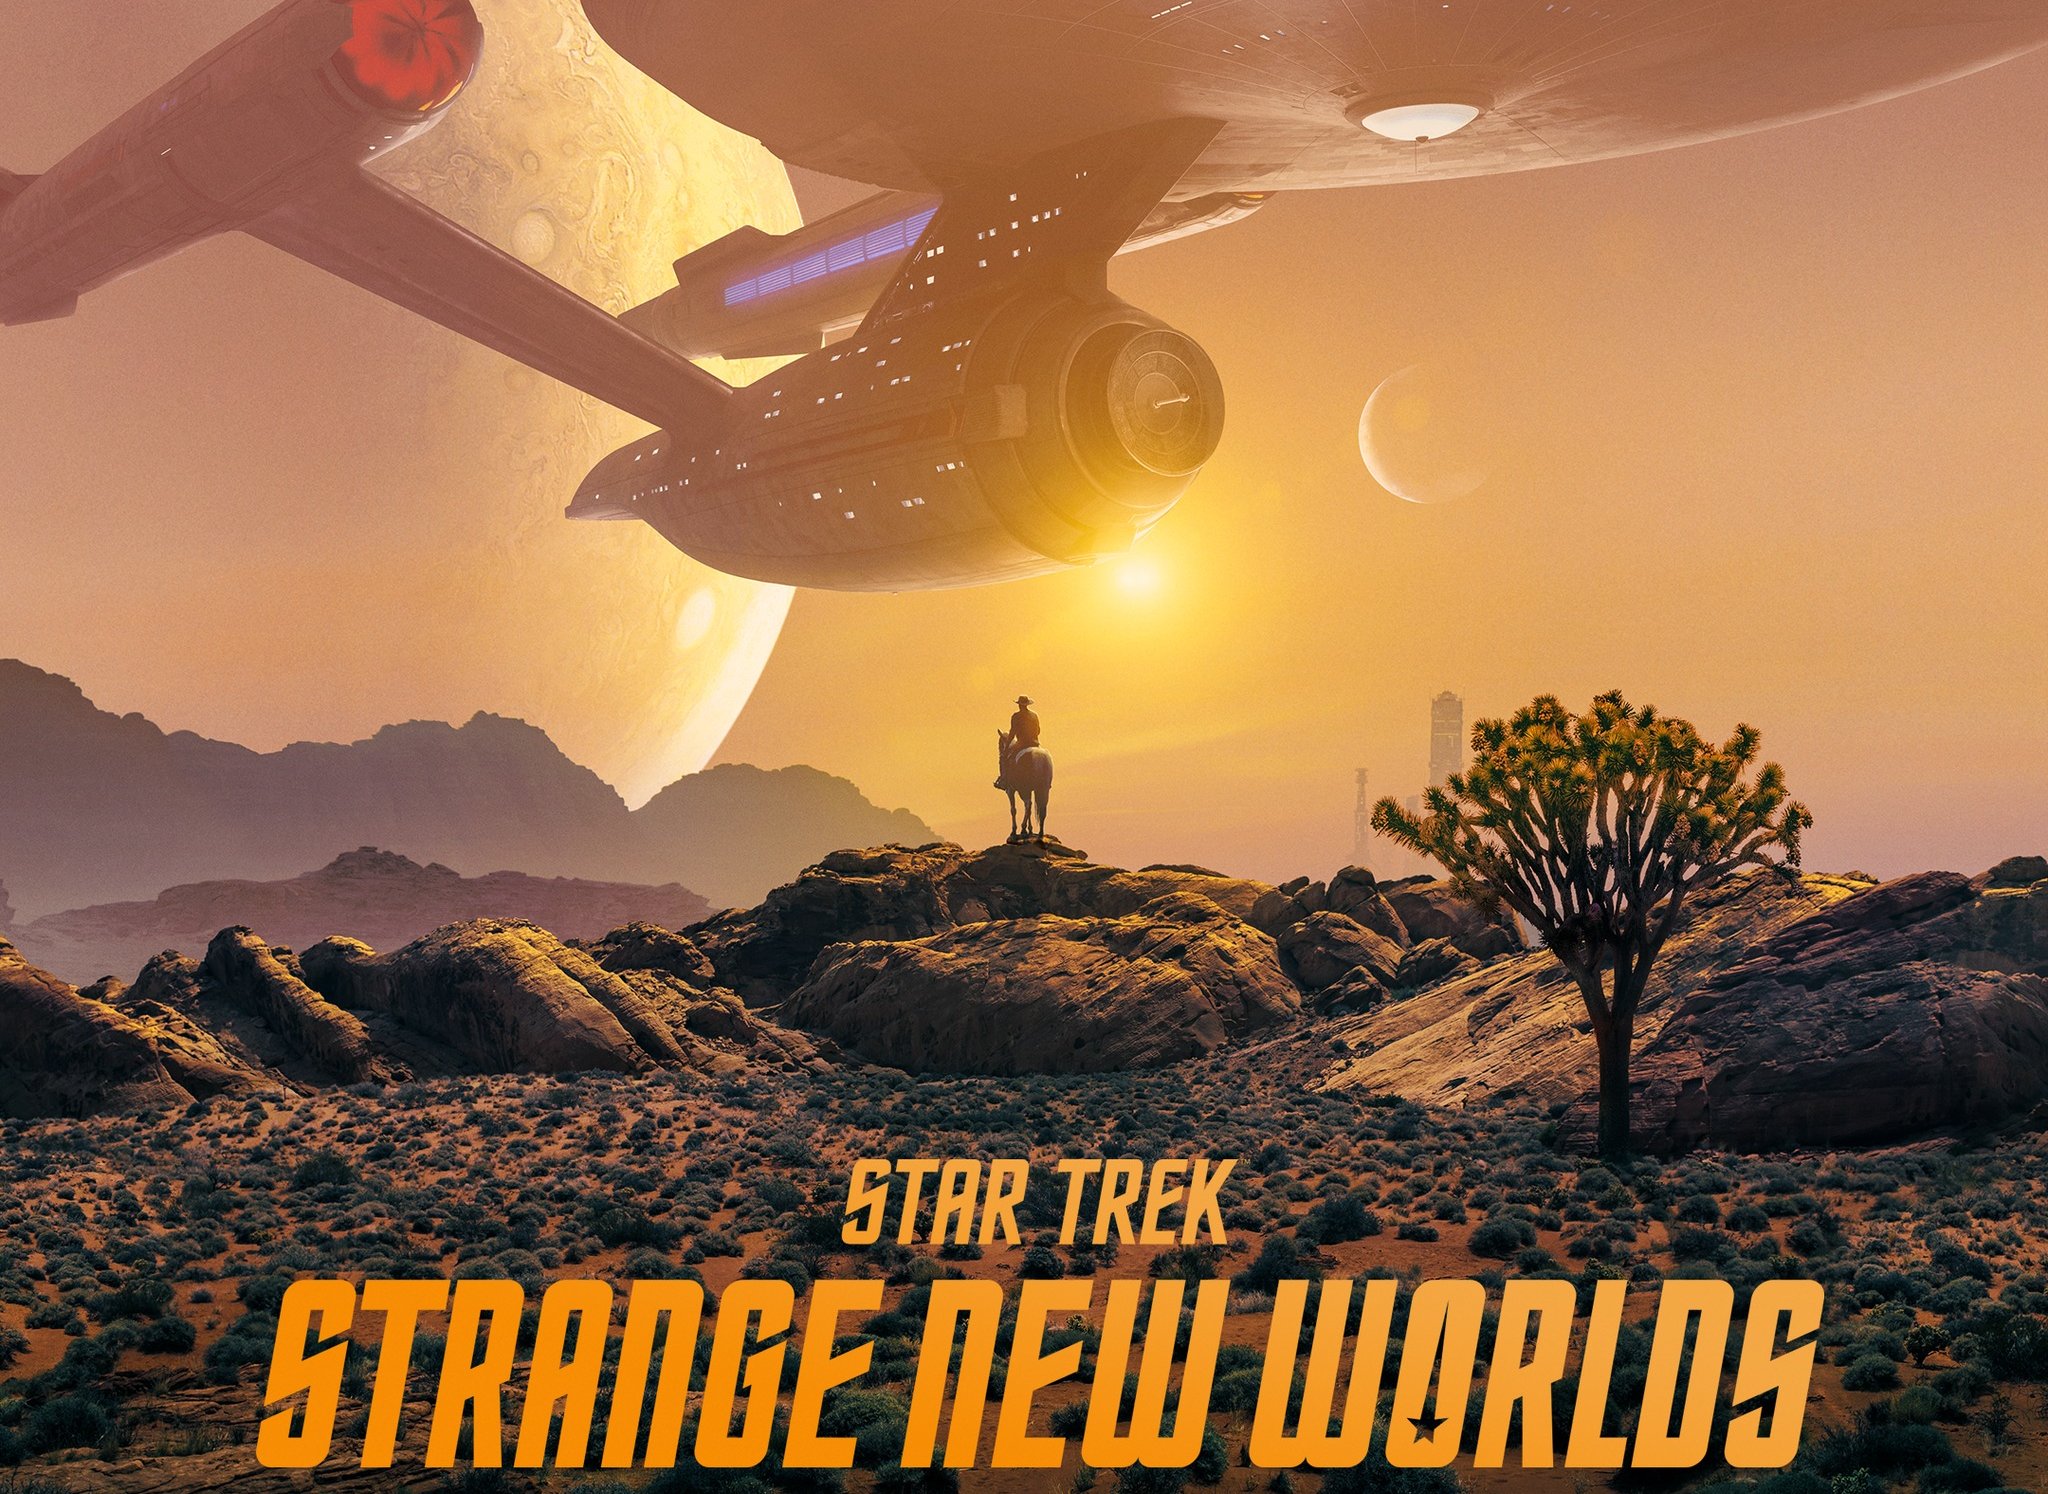 Download Star Trek Strange New Worlds wallpapers for mobile phone free Star  Trek Strange New Worlds HD pictures